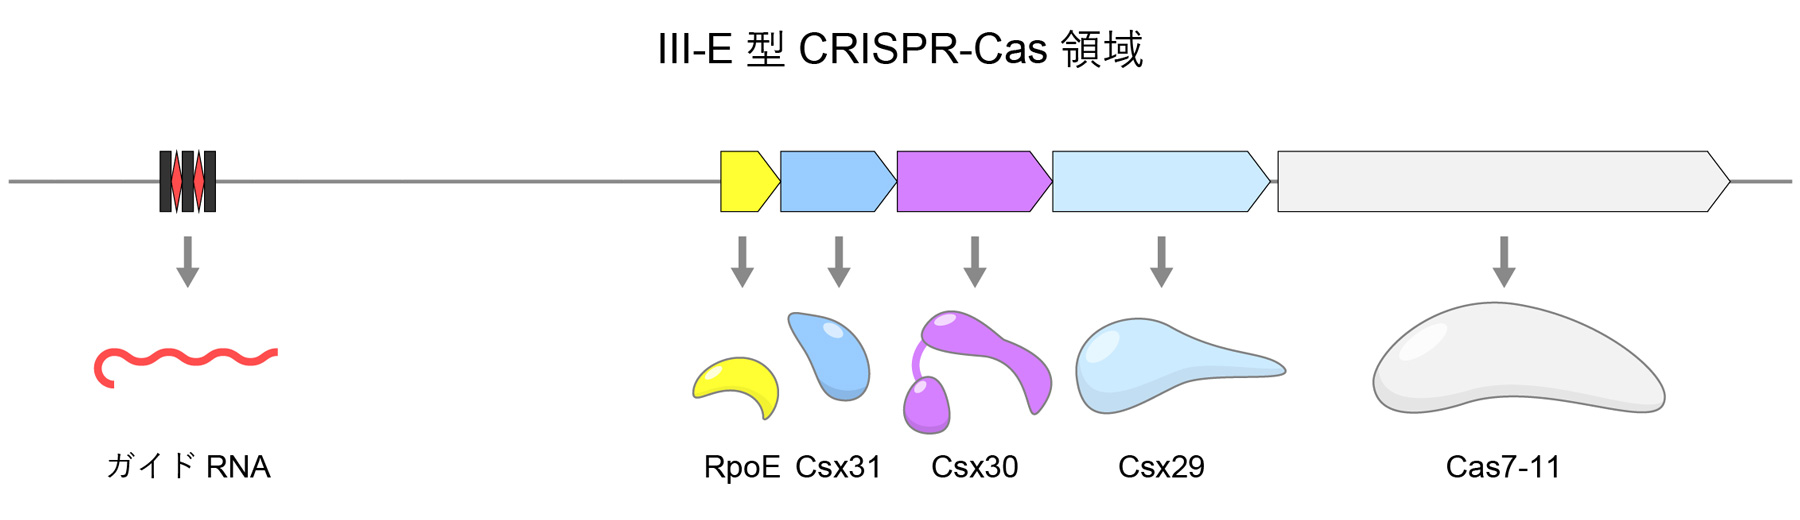 図2　III-E型CRISPR-Cas領域